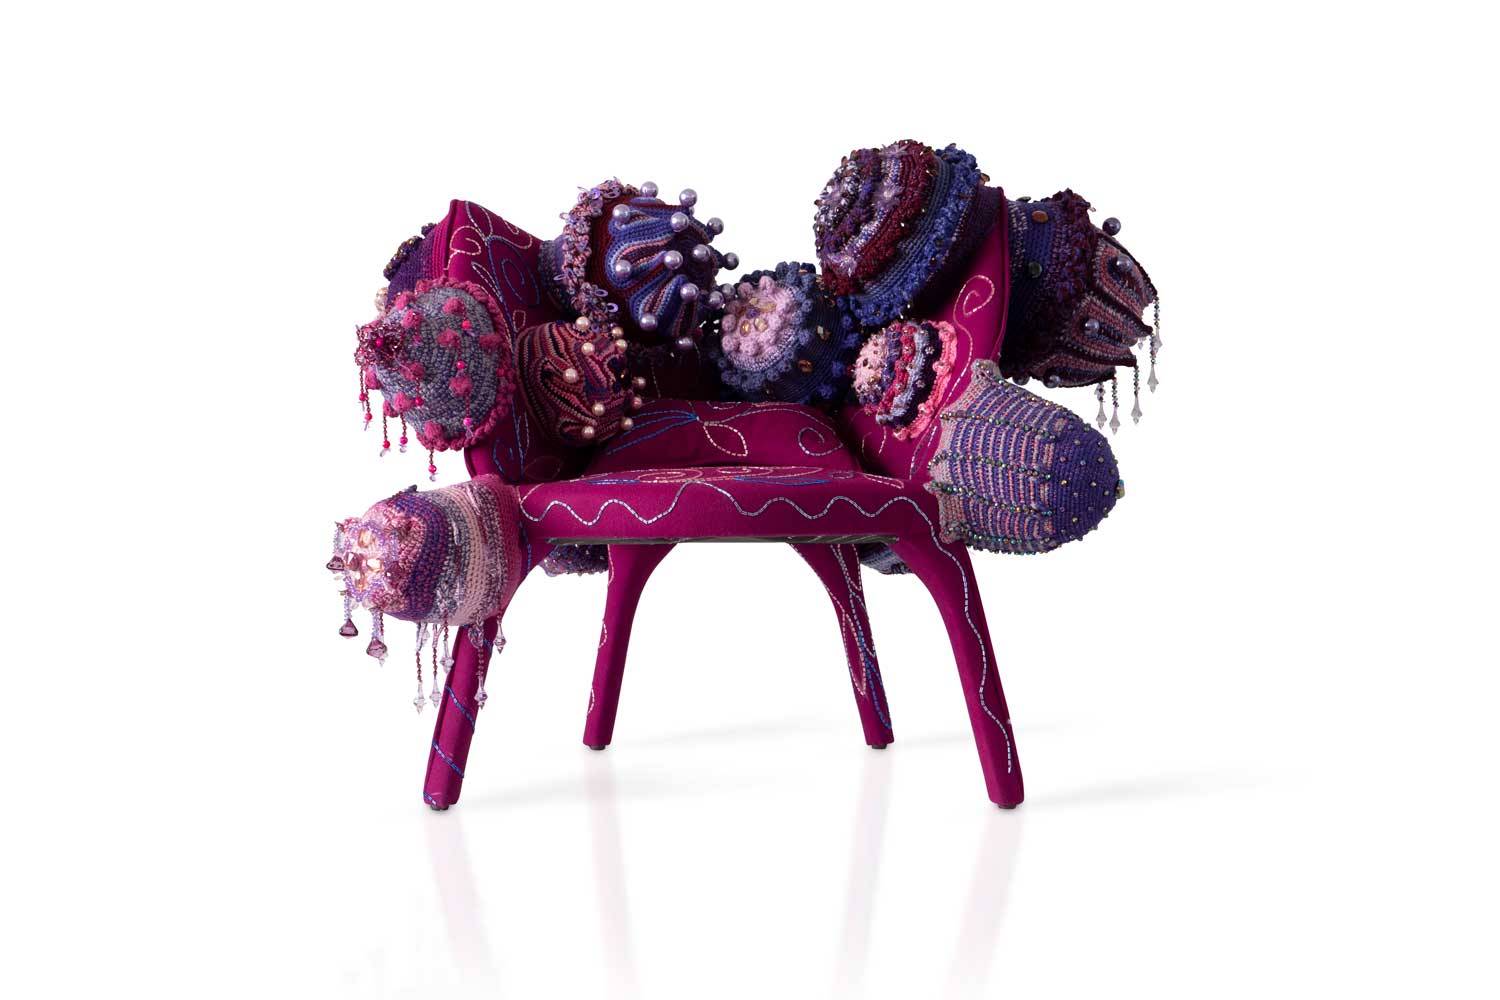 El sillón Lady B creado por Joana Vasconcelos mantiene la esencia original, pero con su identidad y sus propios códigos artísticos
